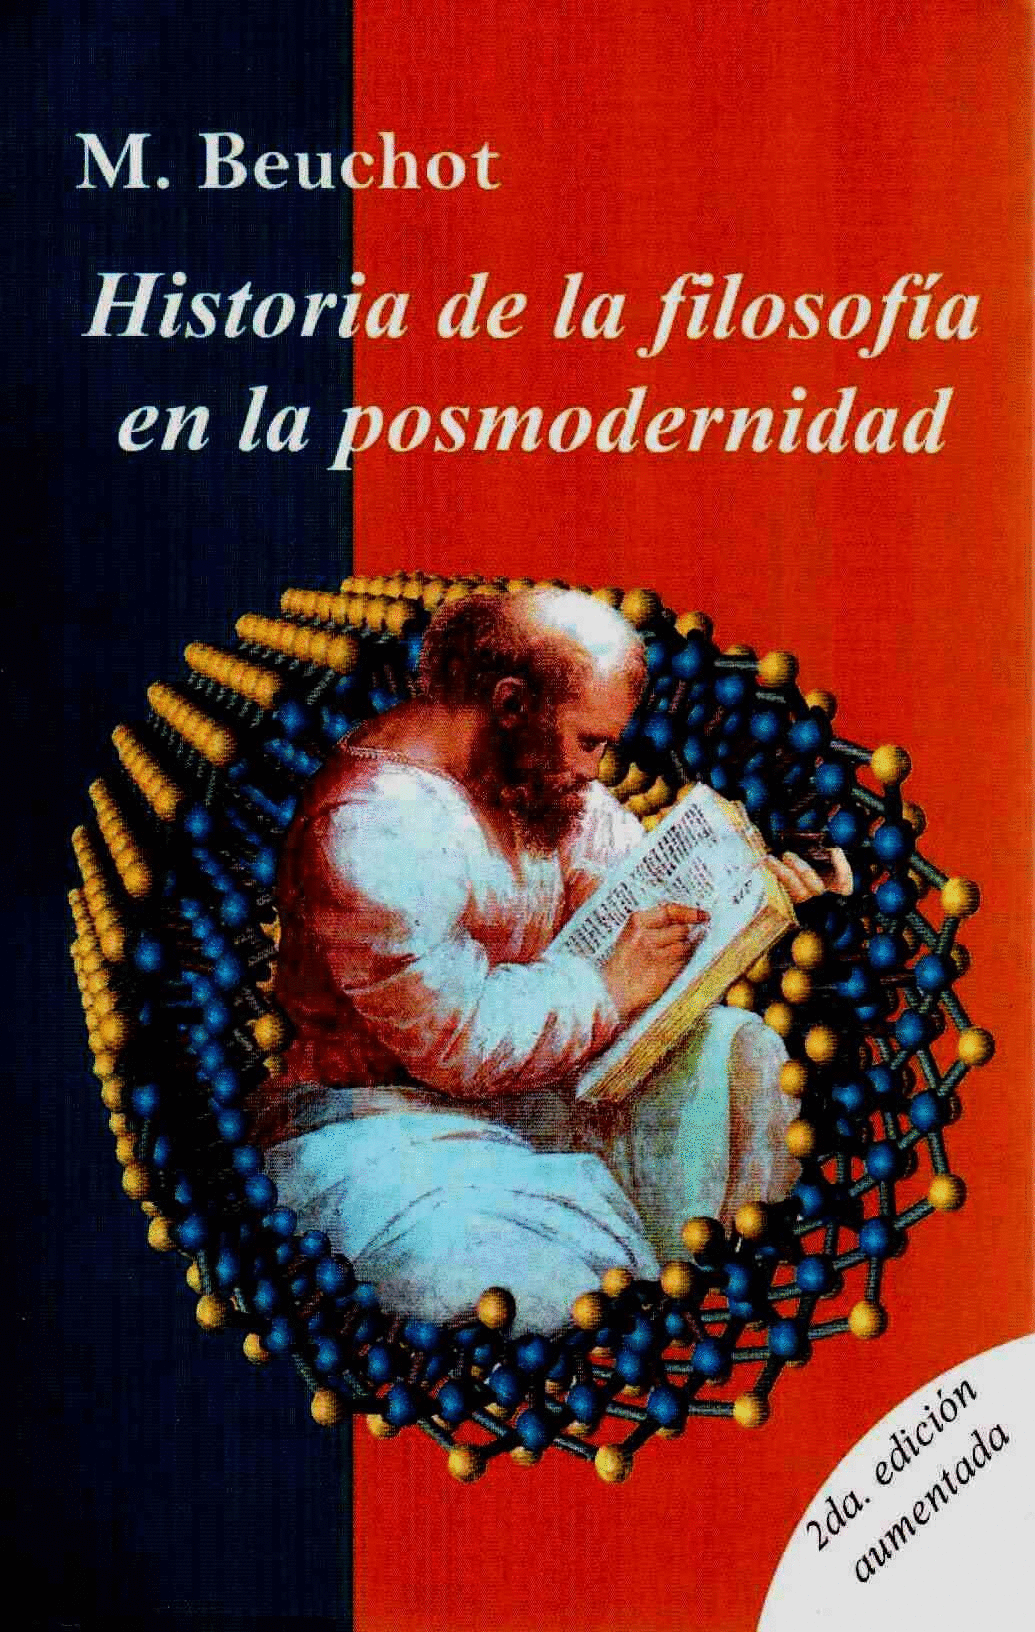 HISTORIA DE LA FILOSOFIA EN LA POSMODERNIDAD